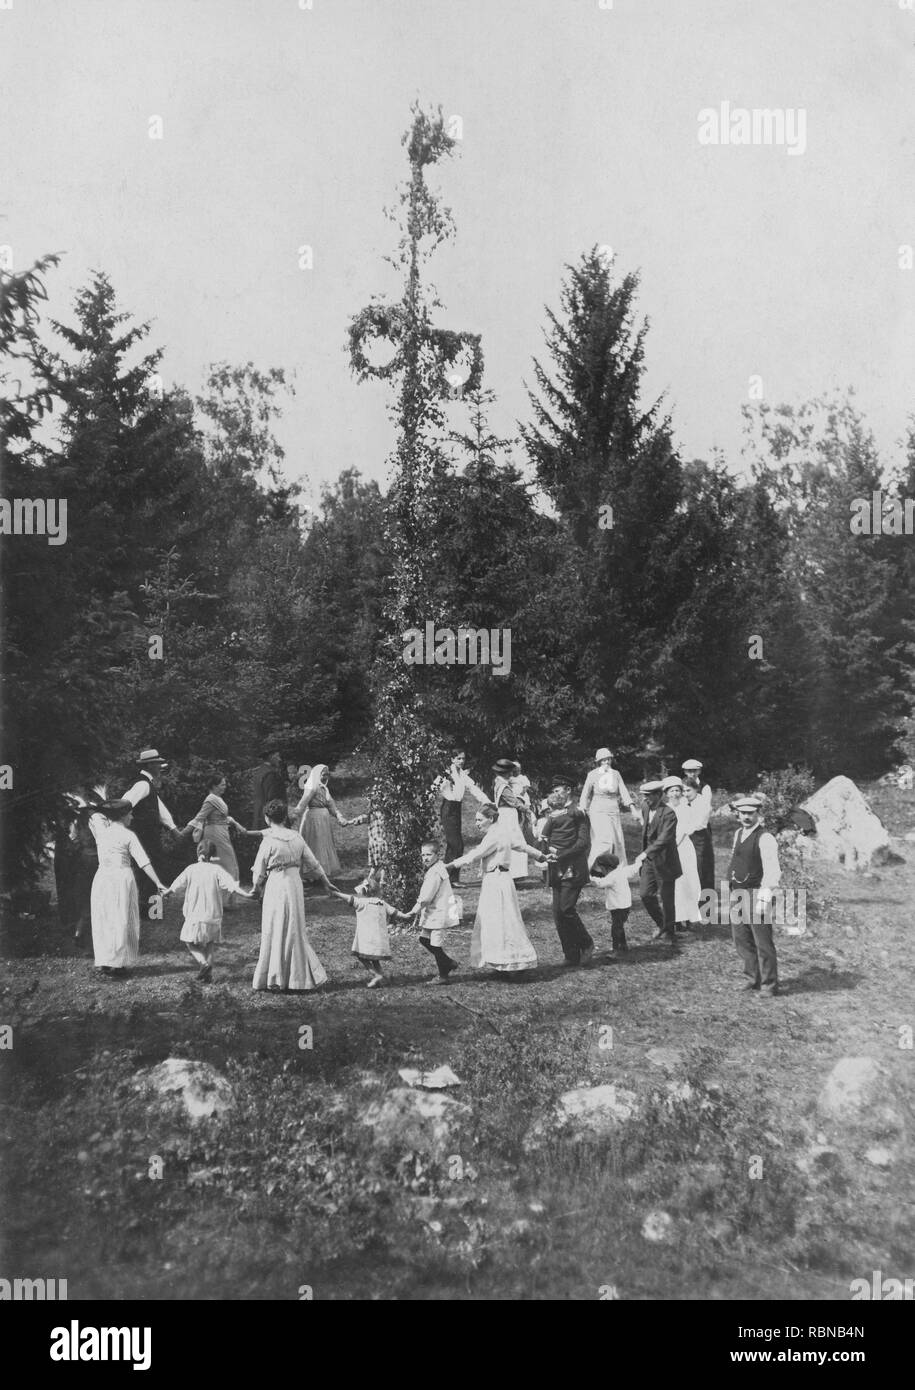 Songe d'une tradition en Suède. Dans le cadre des festivités un Maypole est ressuscité, hommes, femmes et enfants se réunissent pour danser autour de lui. La Suède au début du xxe siècle. Banque D'Images